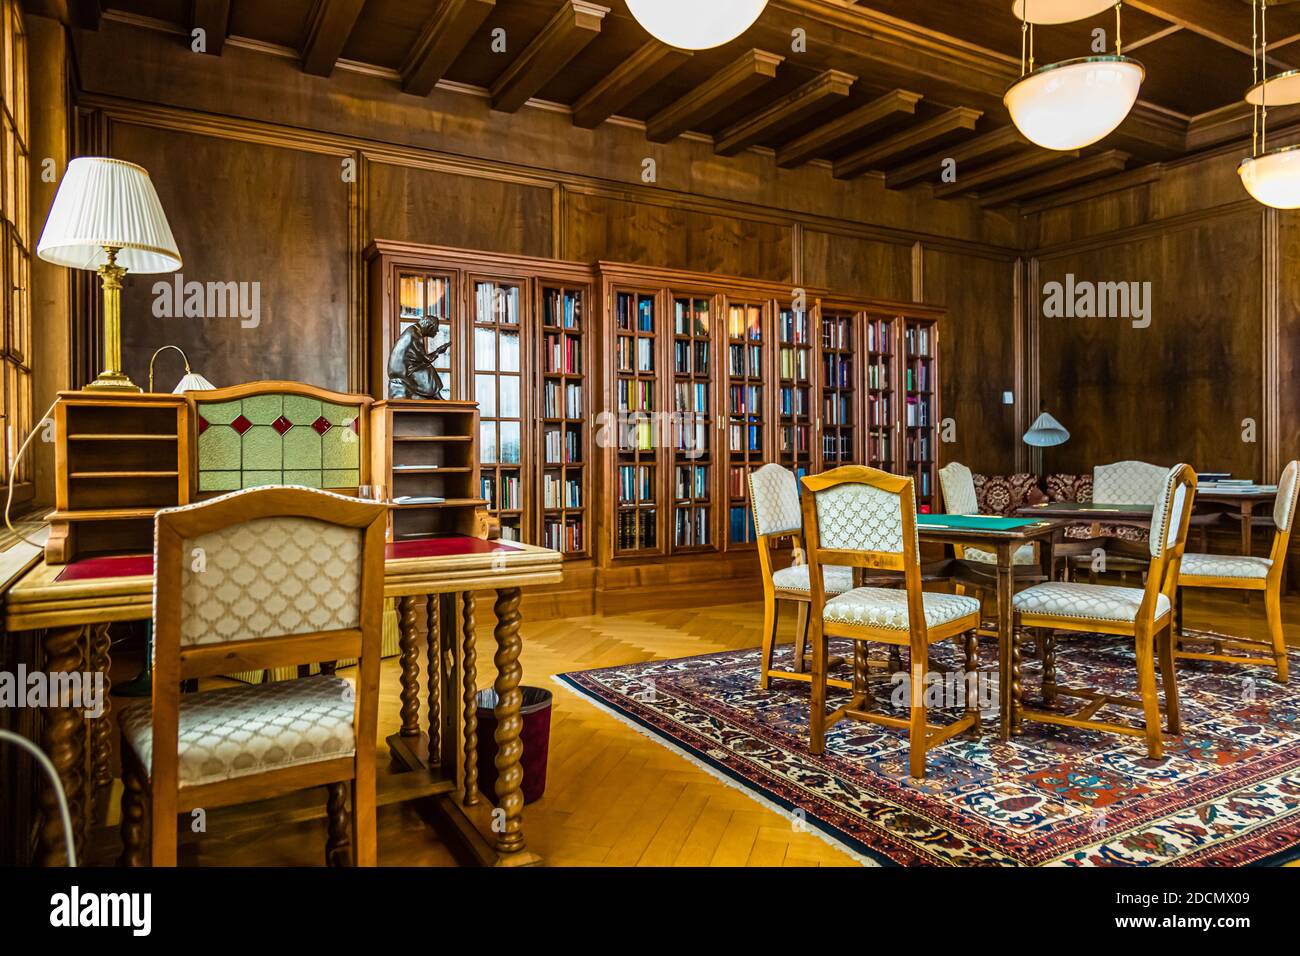 Bibliothek des Hotel Waldhaus Sils im Engadin/Segl, Schweiz. Wer hätte an  diesen Tischen gelesen oder geschrieben? In diesem Raum dachte Elke  Heidenreich: "Wie groß ist die Welt und wie ruhig Es ist